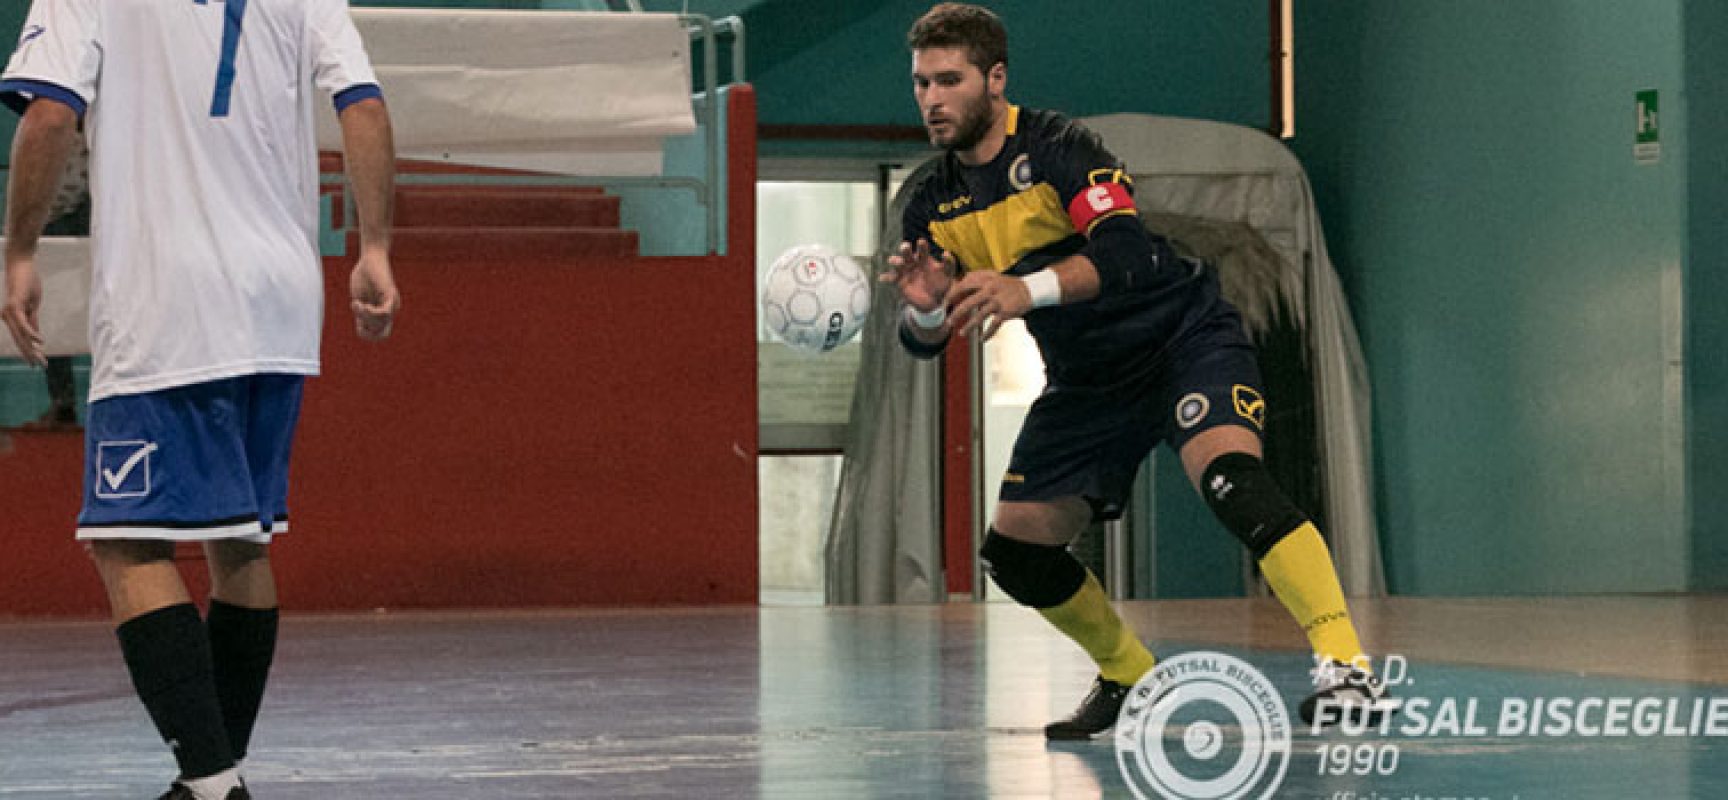 Futsal Bisceglie, capitan Sinigaglia suona la carica: “Iniziamo a macinare punti”